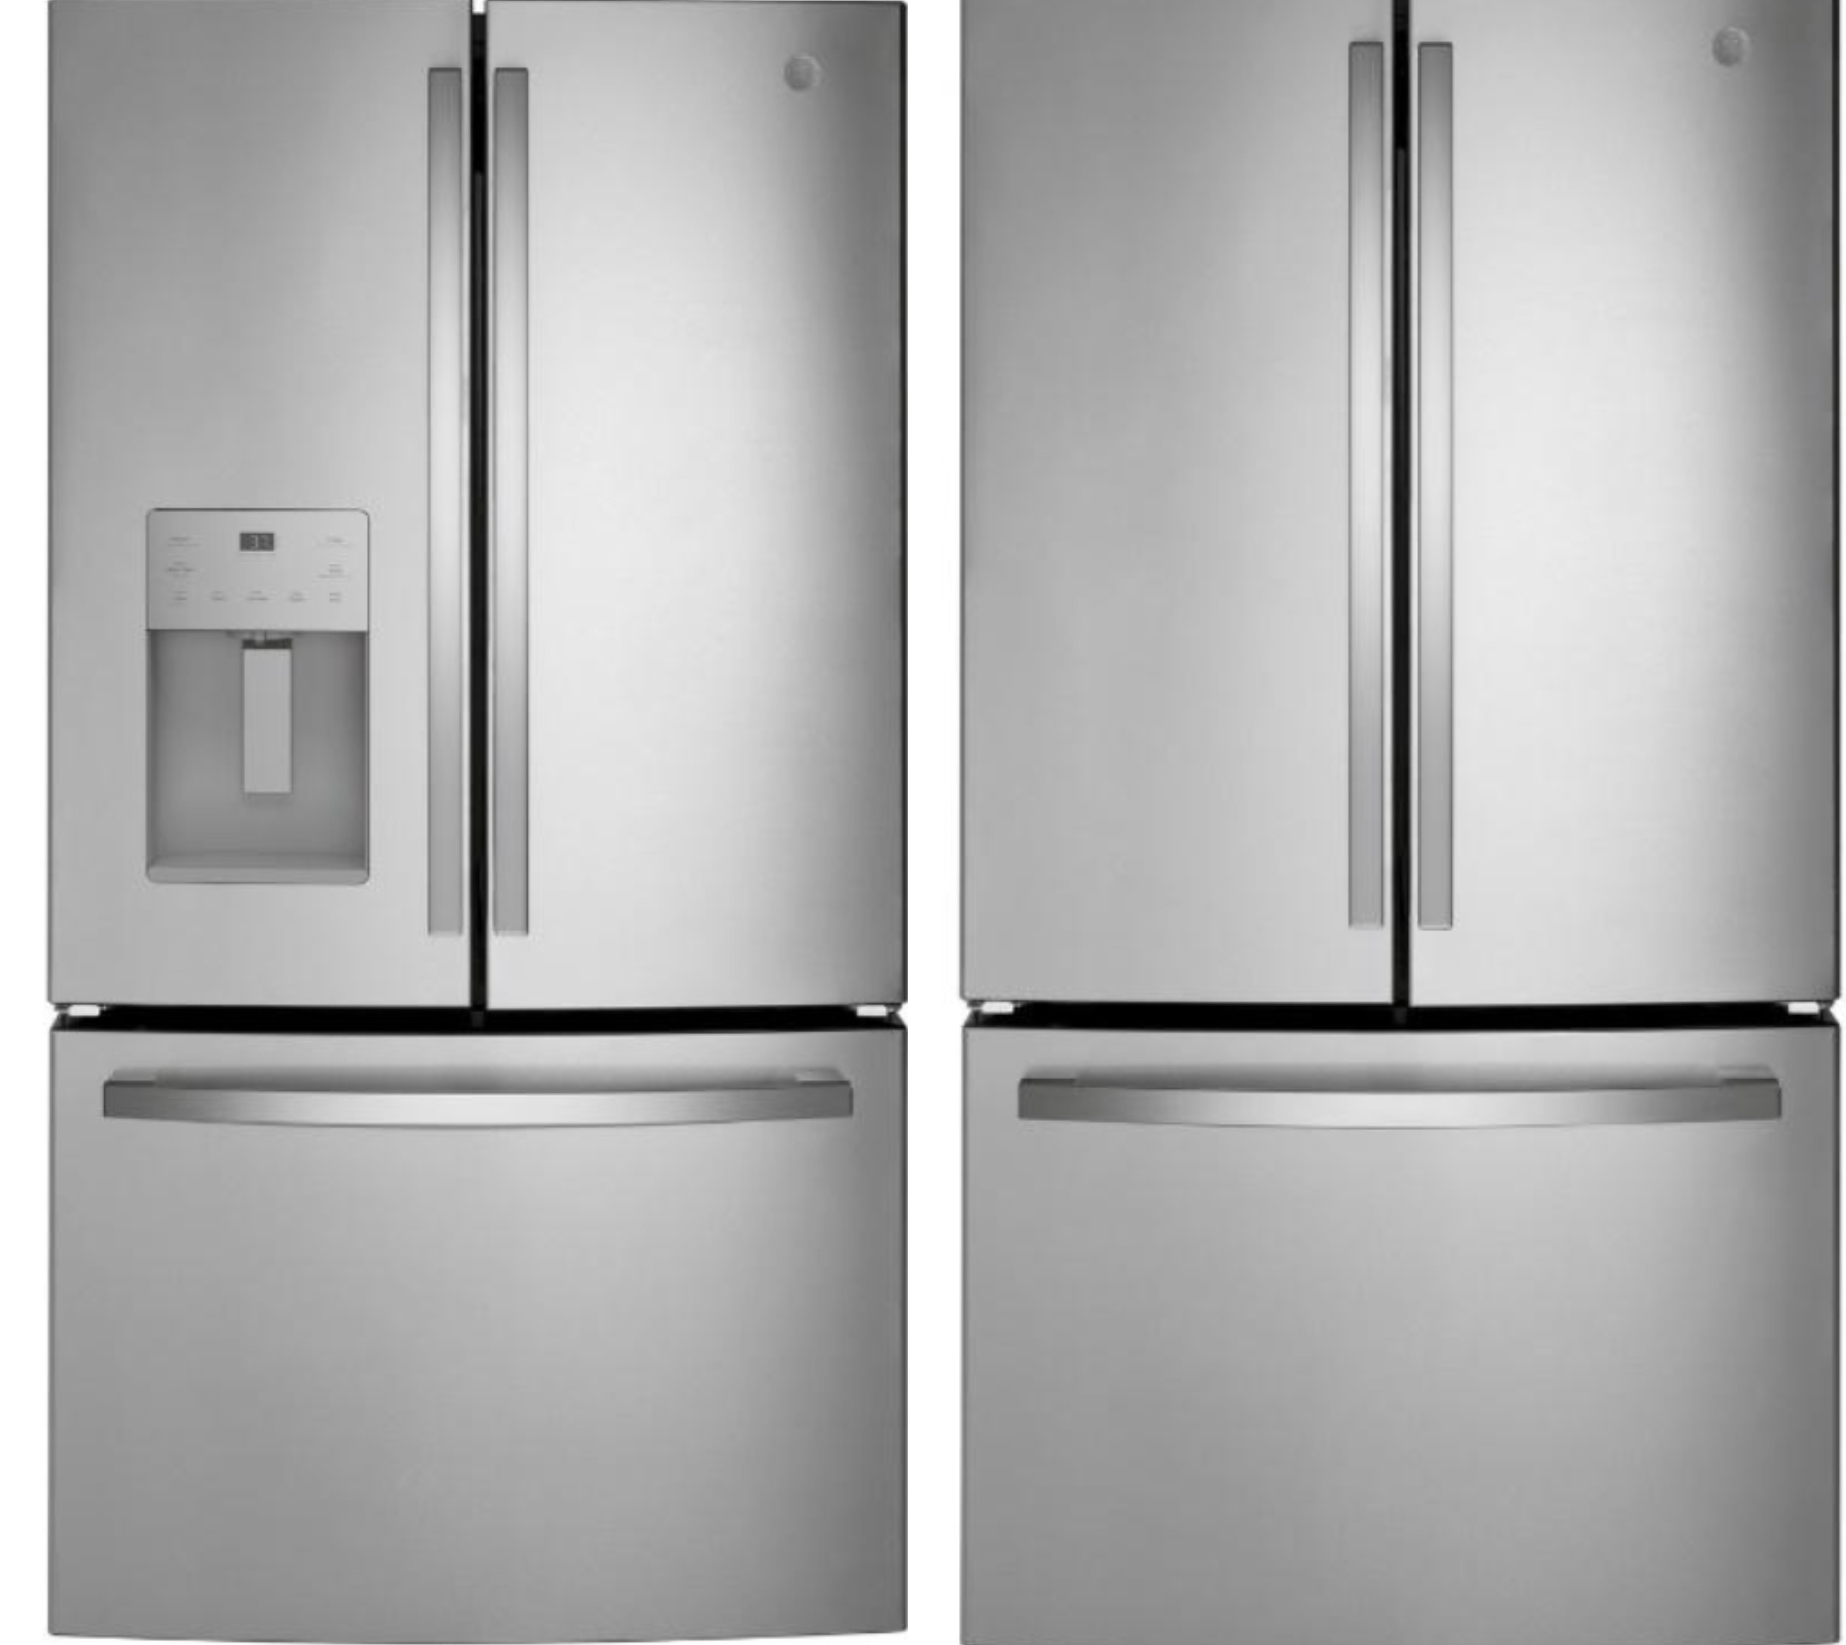 Details about   GE refrigerator Door Handle broken Spike Wr12x10813 